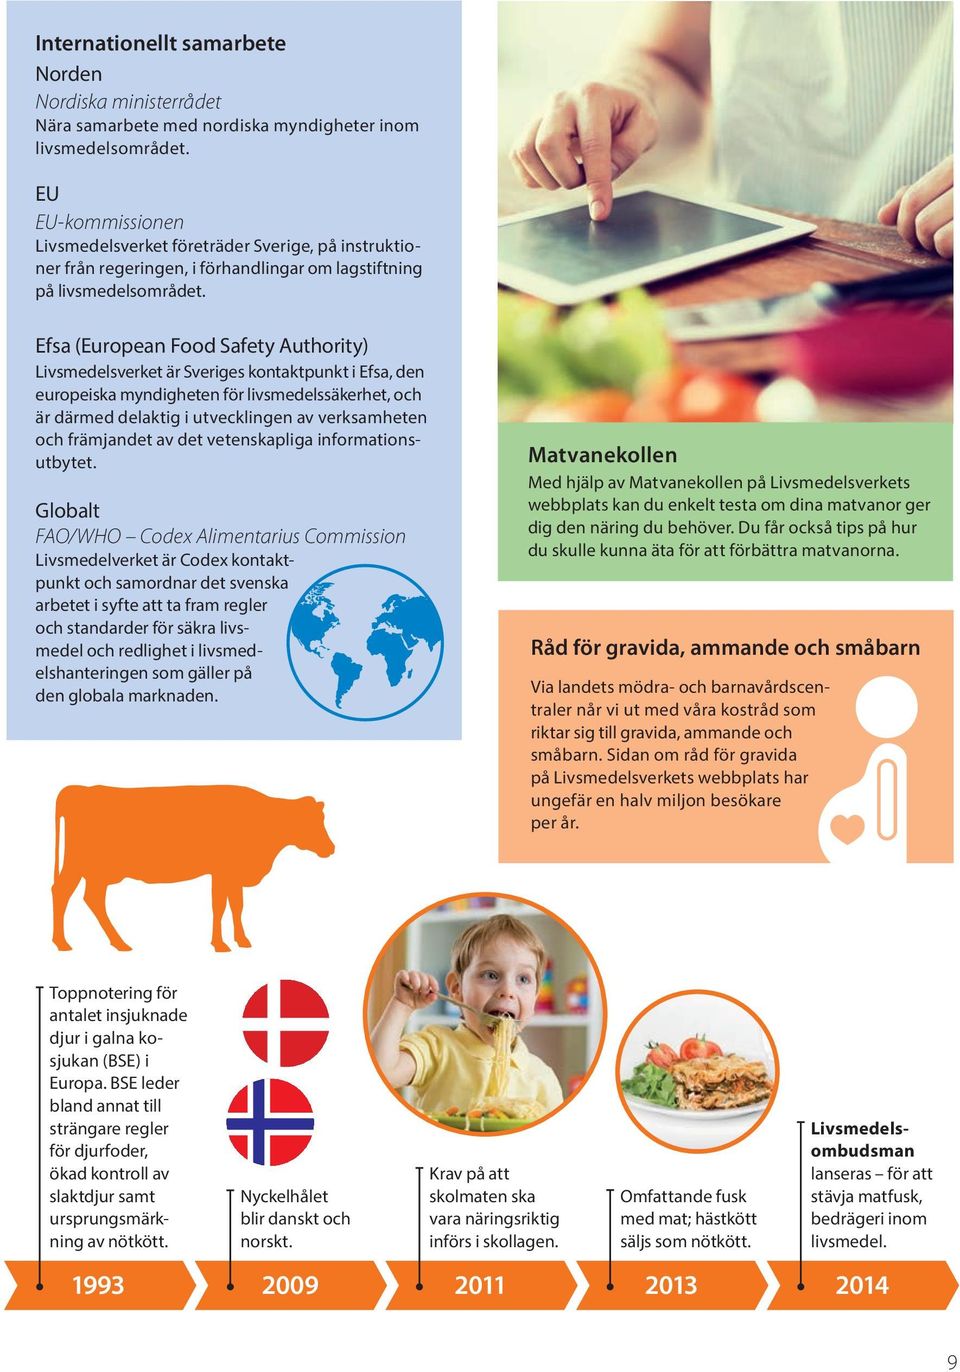 Efsa (European Food Safety Authority) Livsmedelsverket är Sveriges kontaktpunkt i Efsa, den europeiska myndigheten för livsmedelssäkerhet, och är därmed delaktig i utvecklingen av verksamheten och